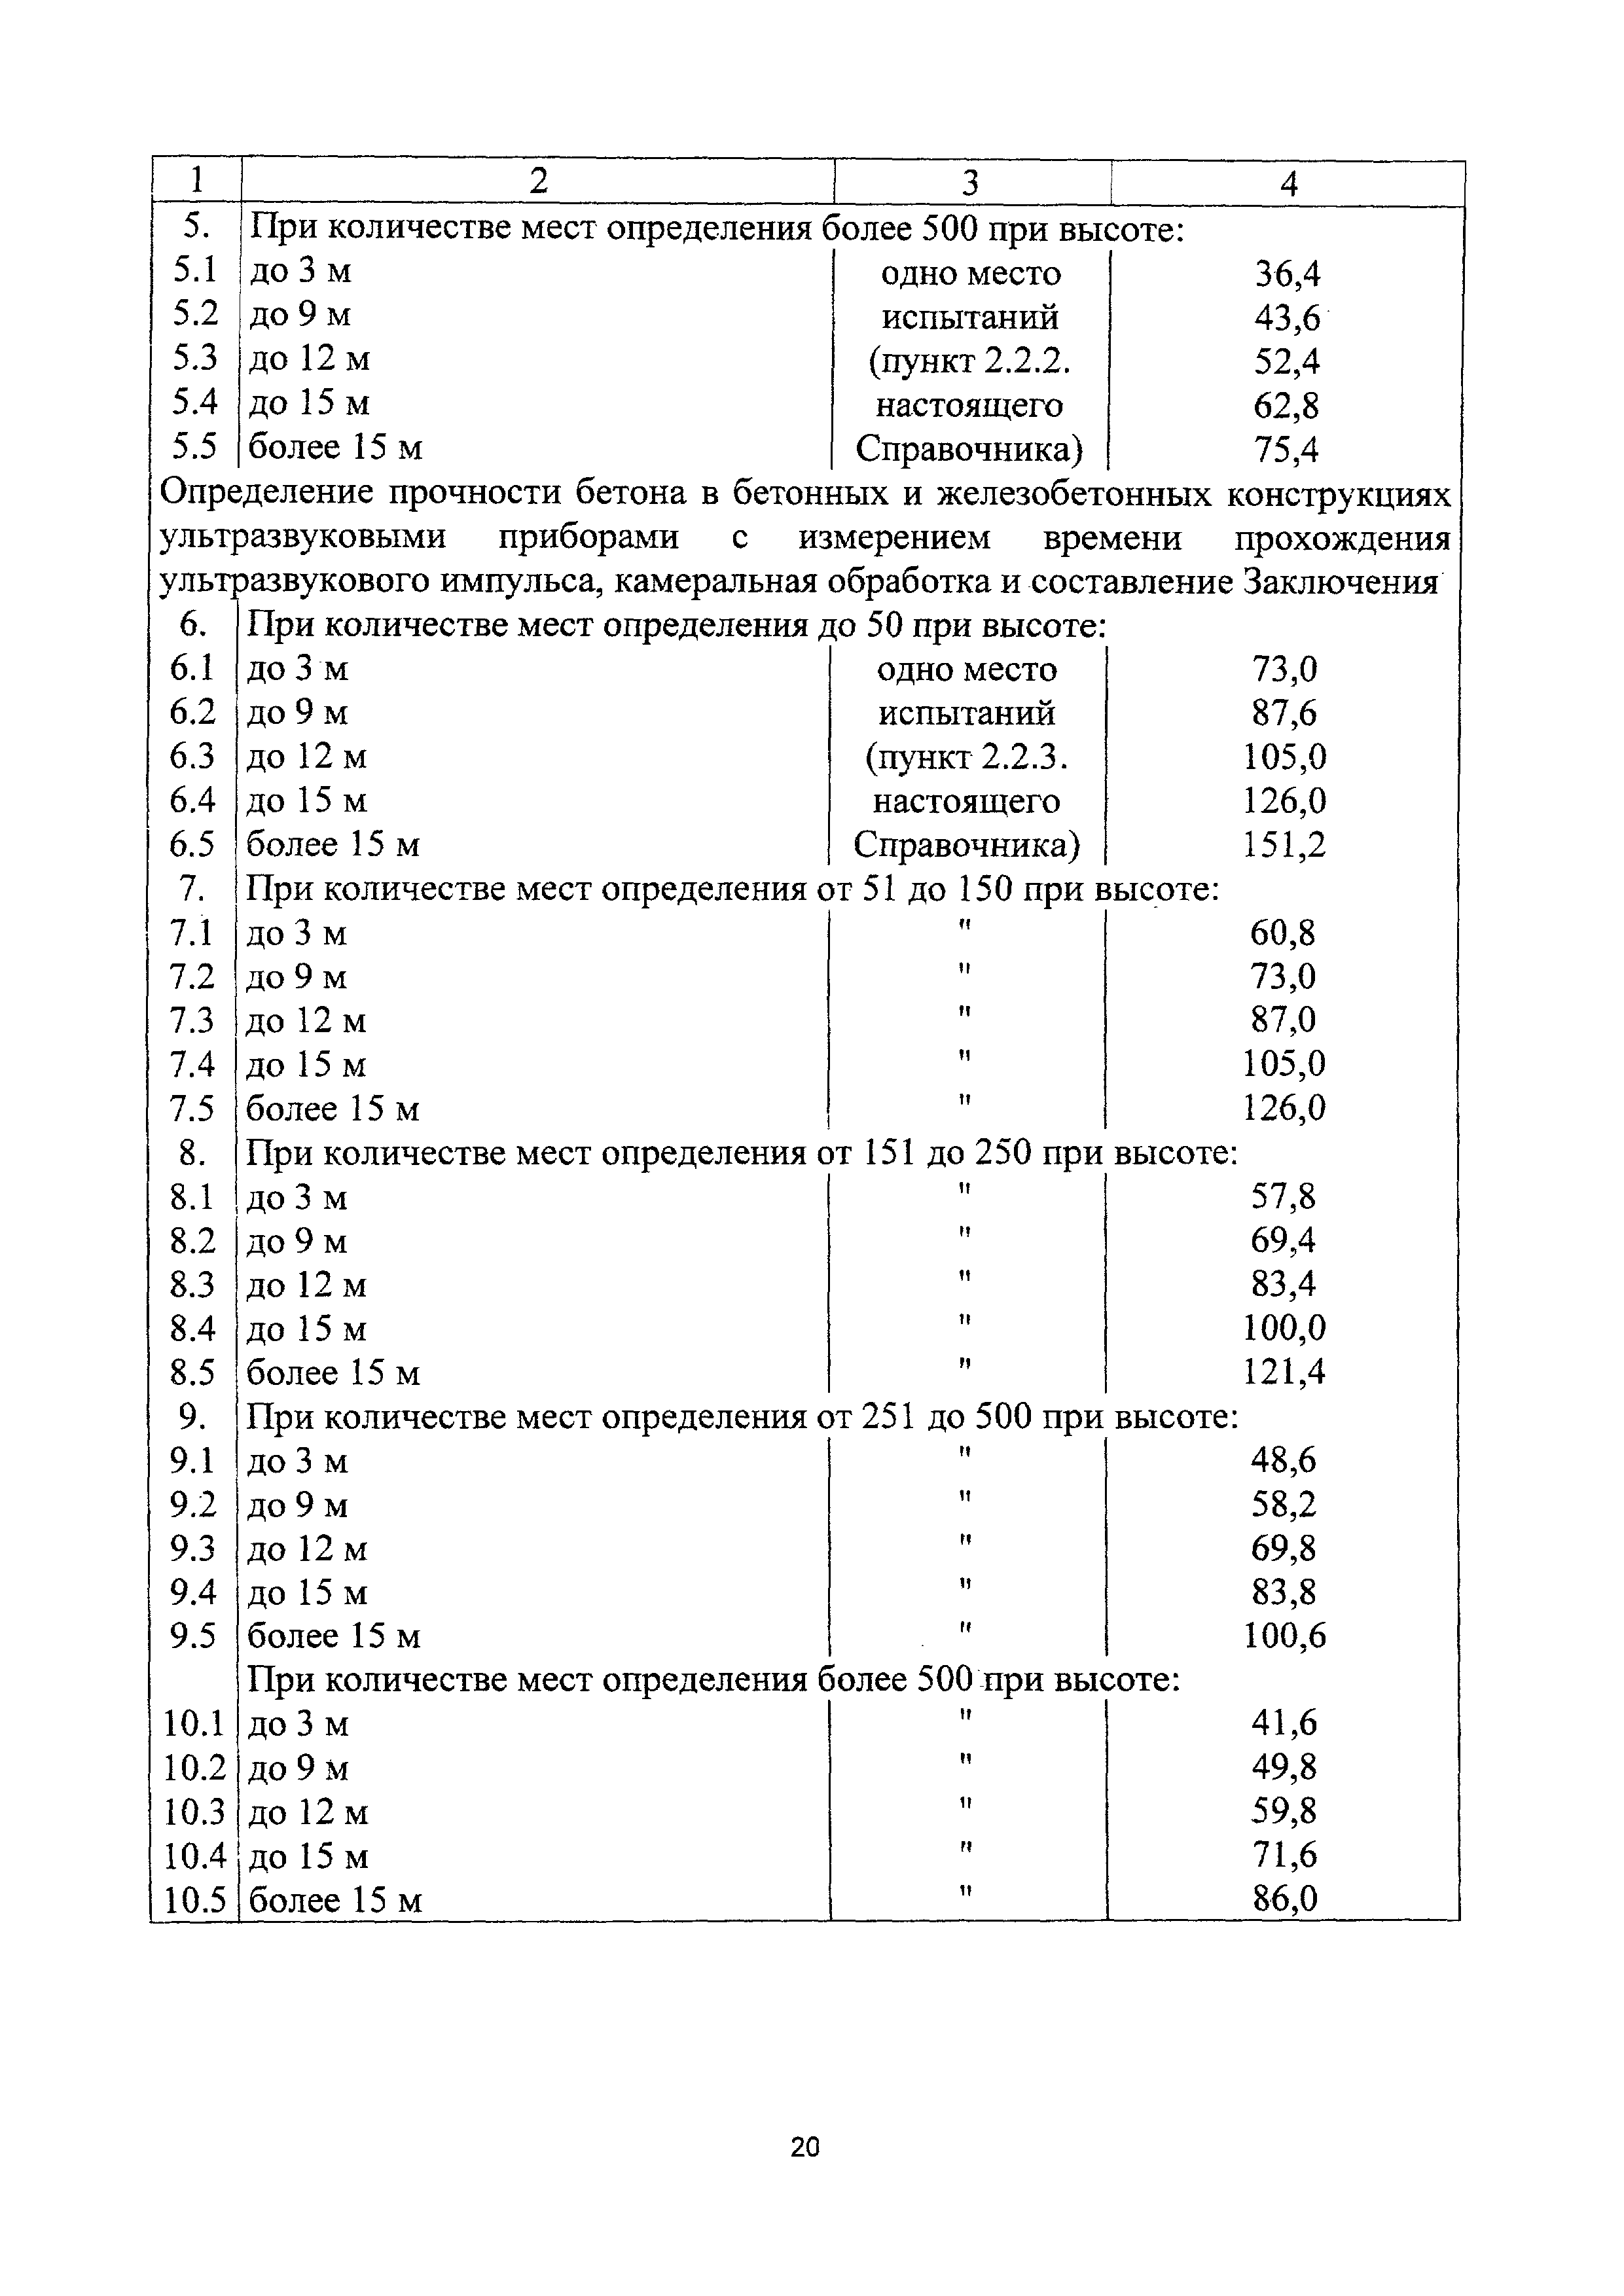 СБЦП 81-2001-25